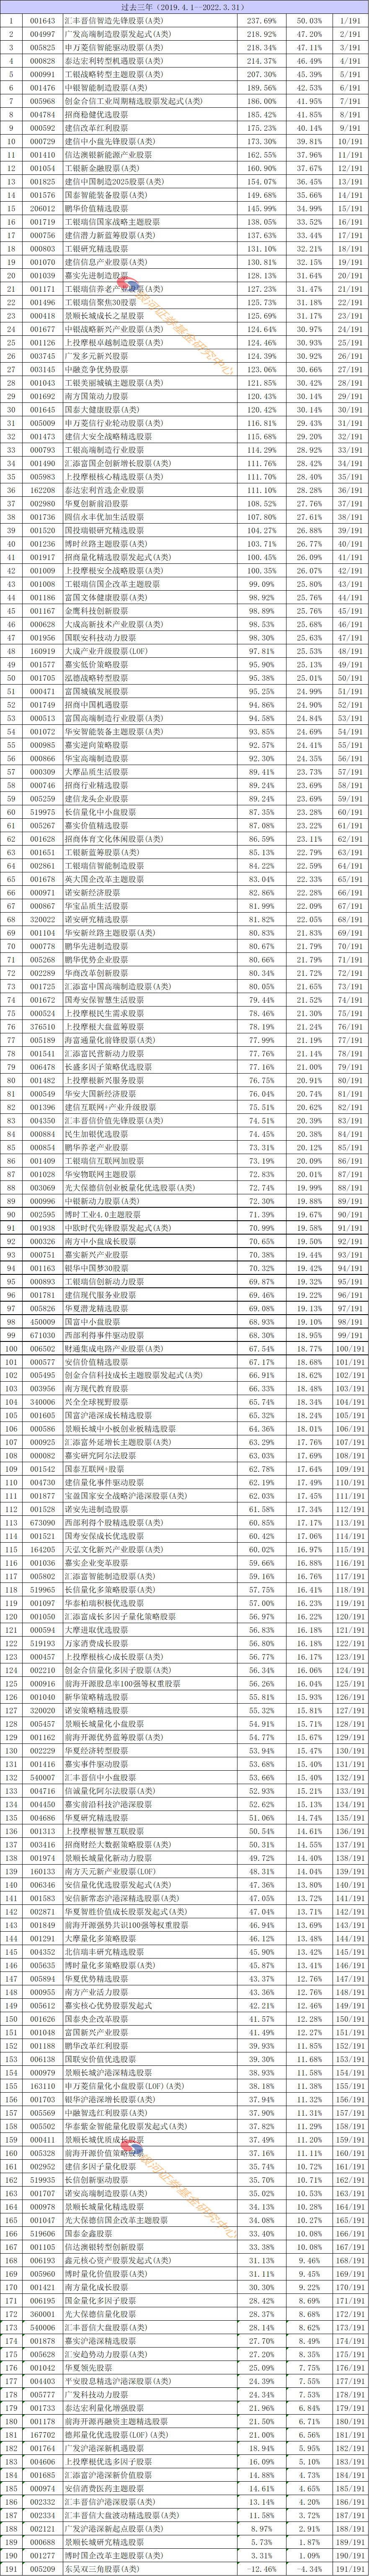 【银河证券】公募基金产品长期业绩排名榜单